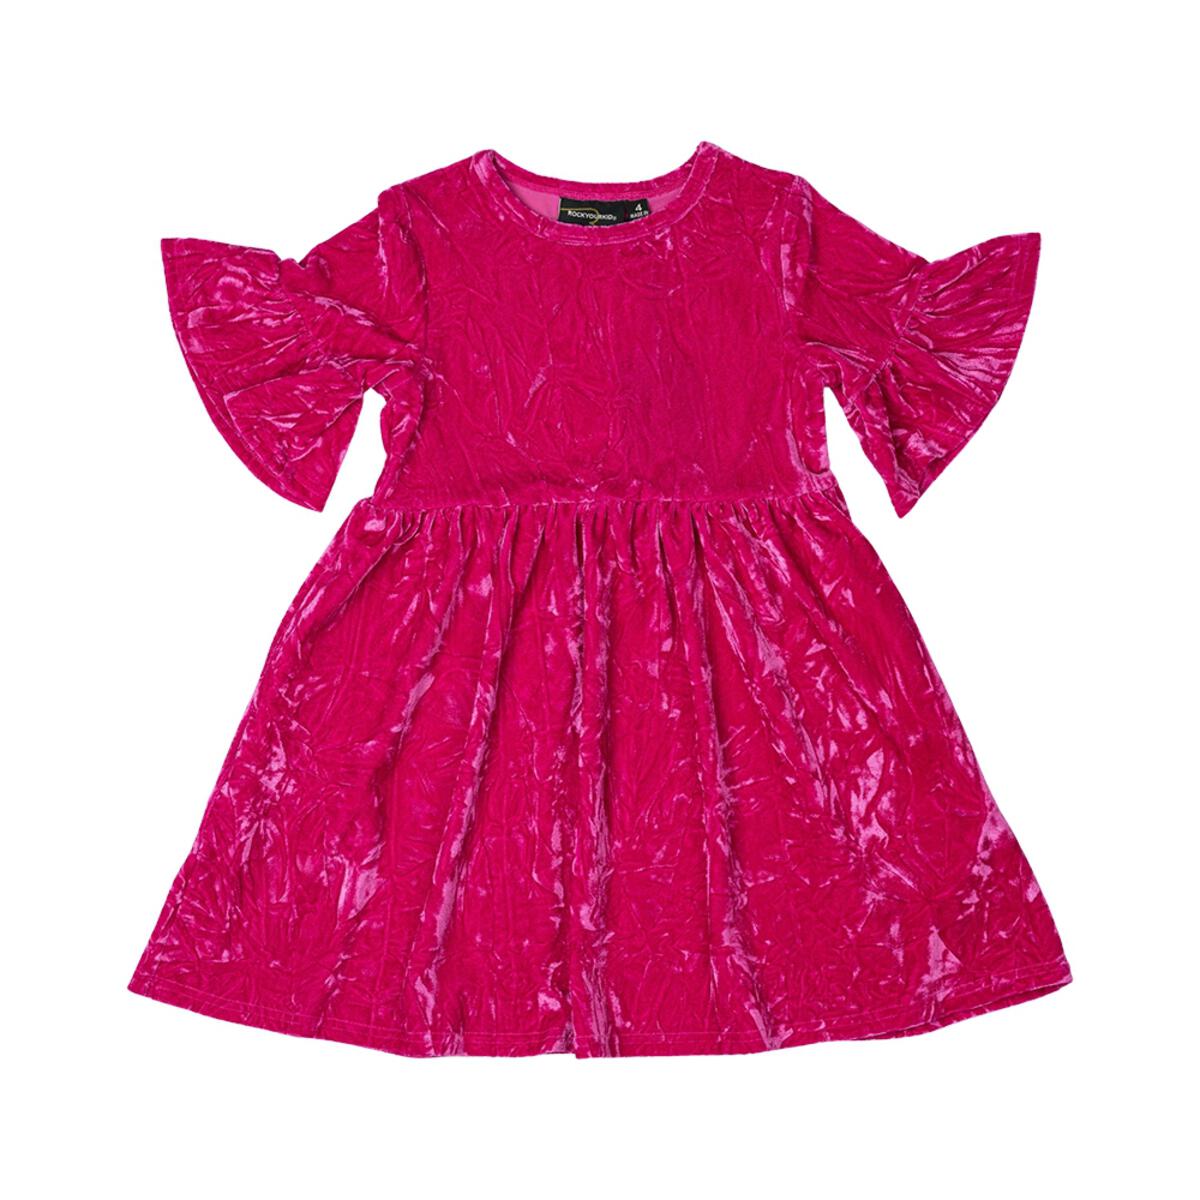 Hot Pink Crushed Velvet Dress